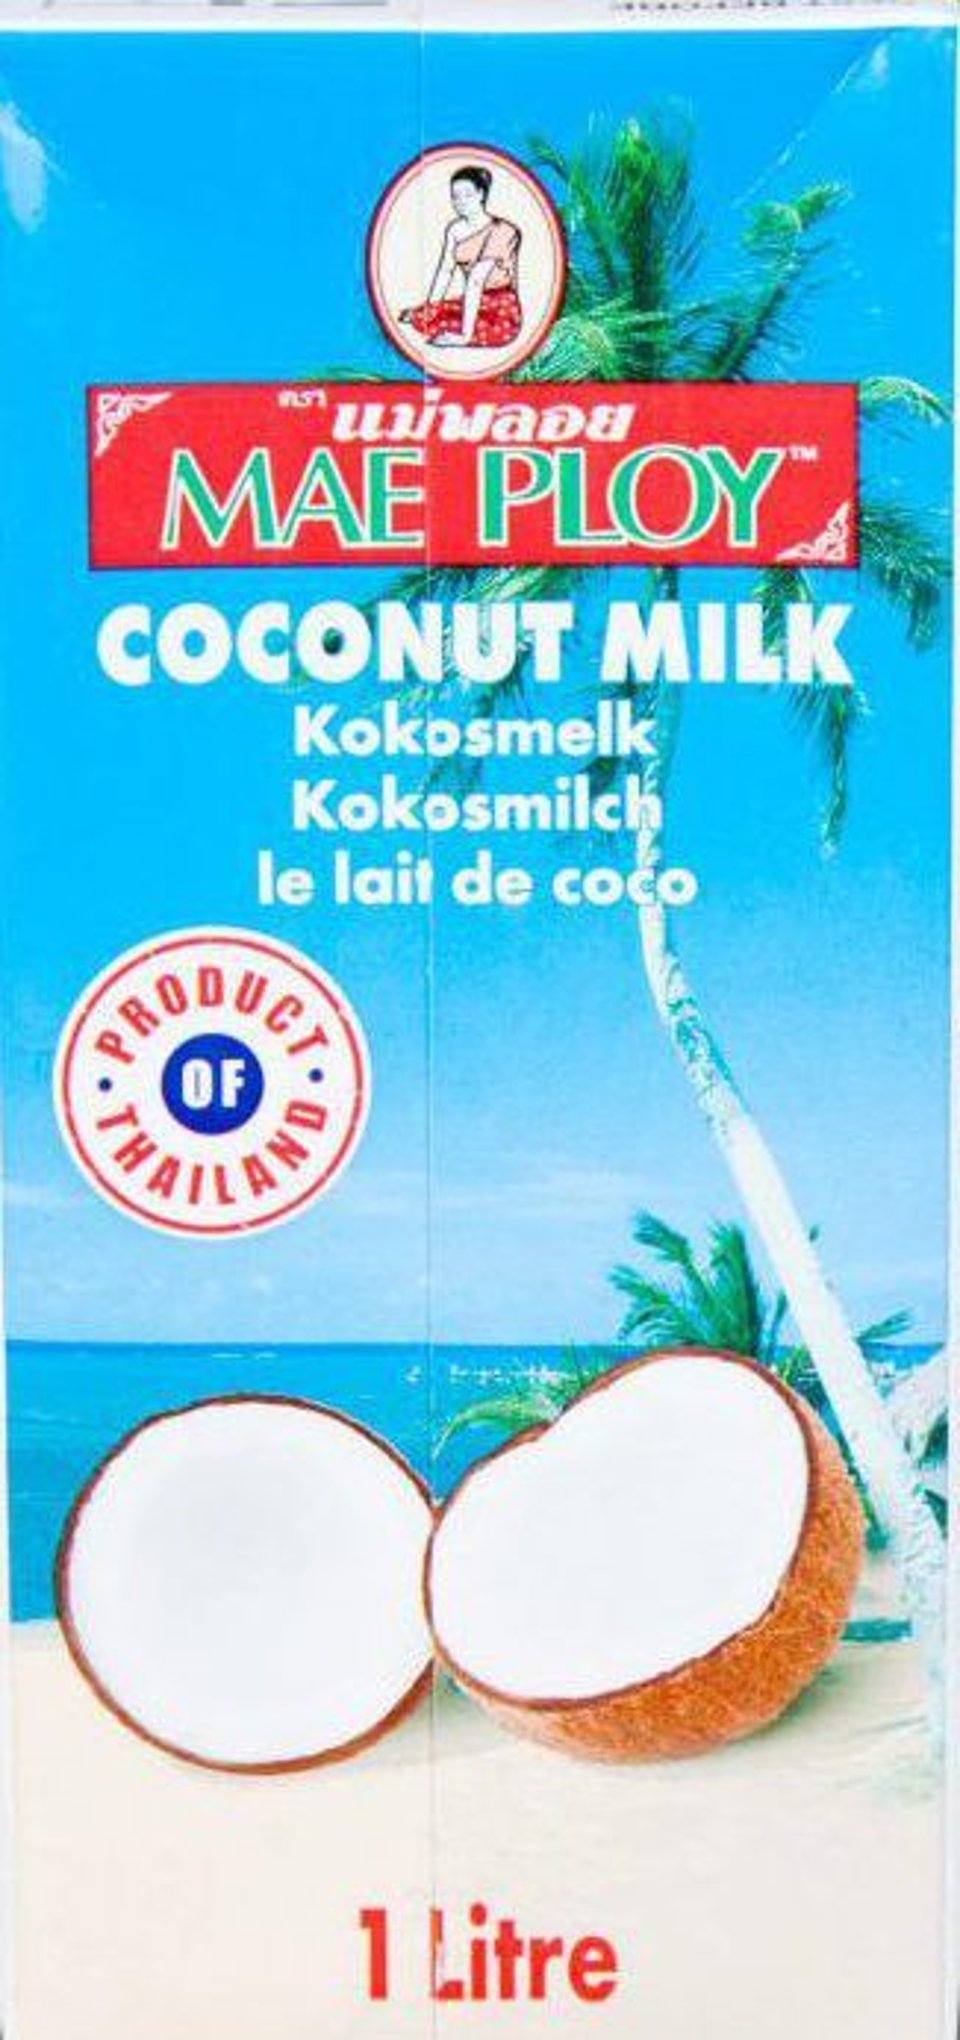 Maeploy Coconutmilk 1L